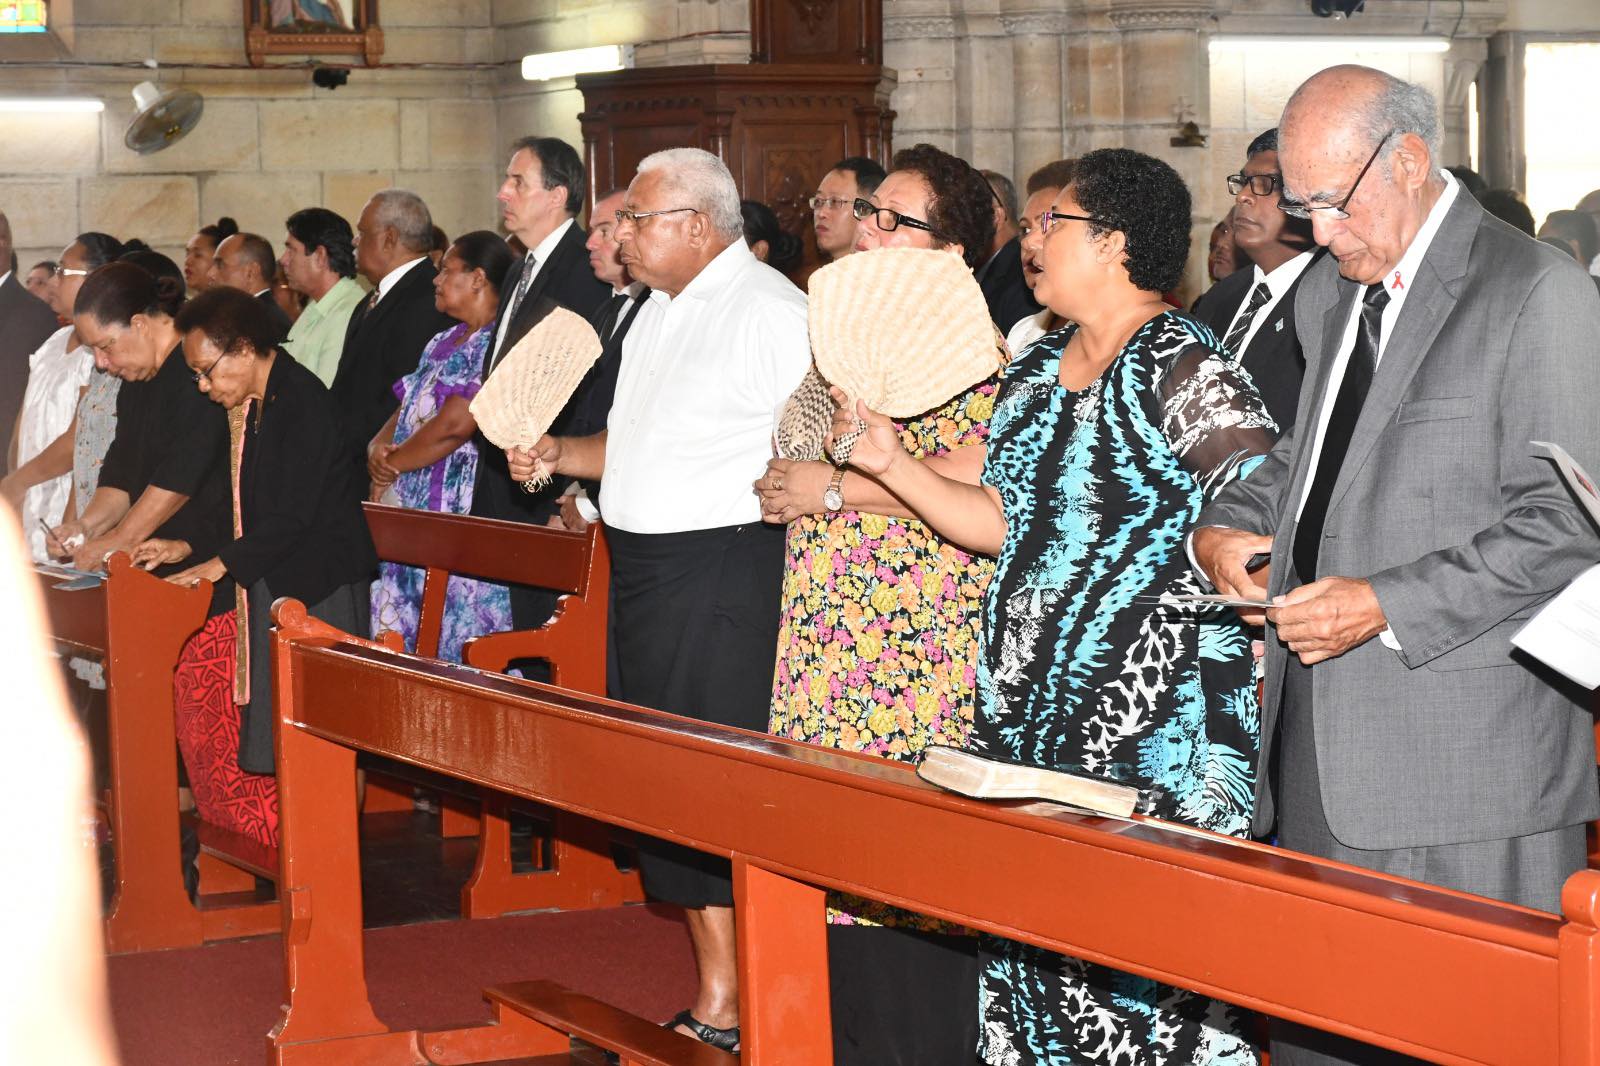 A memorial service in Fiji